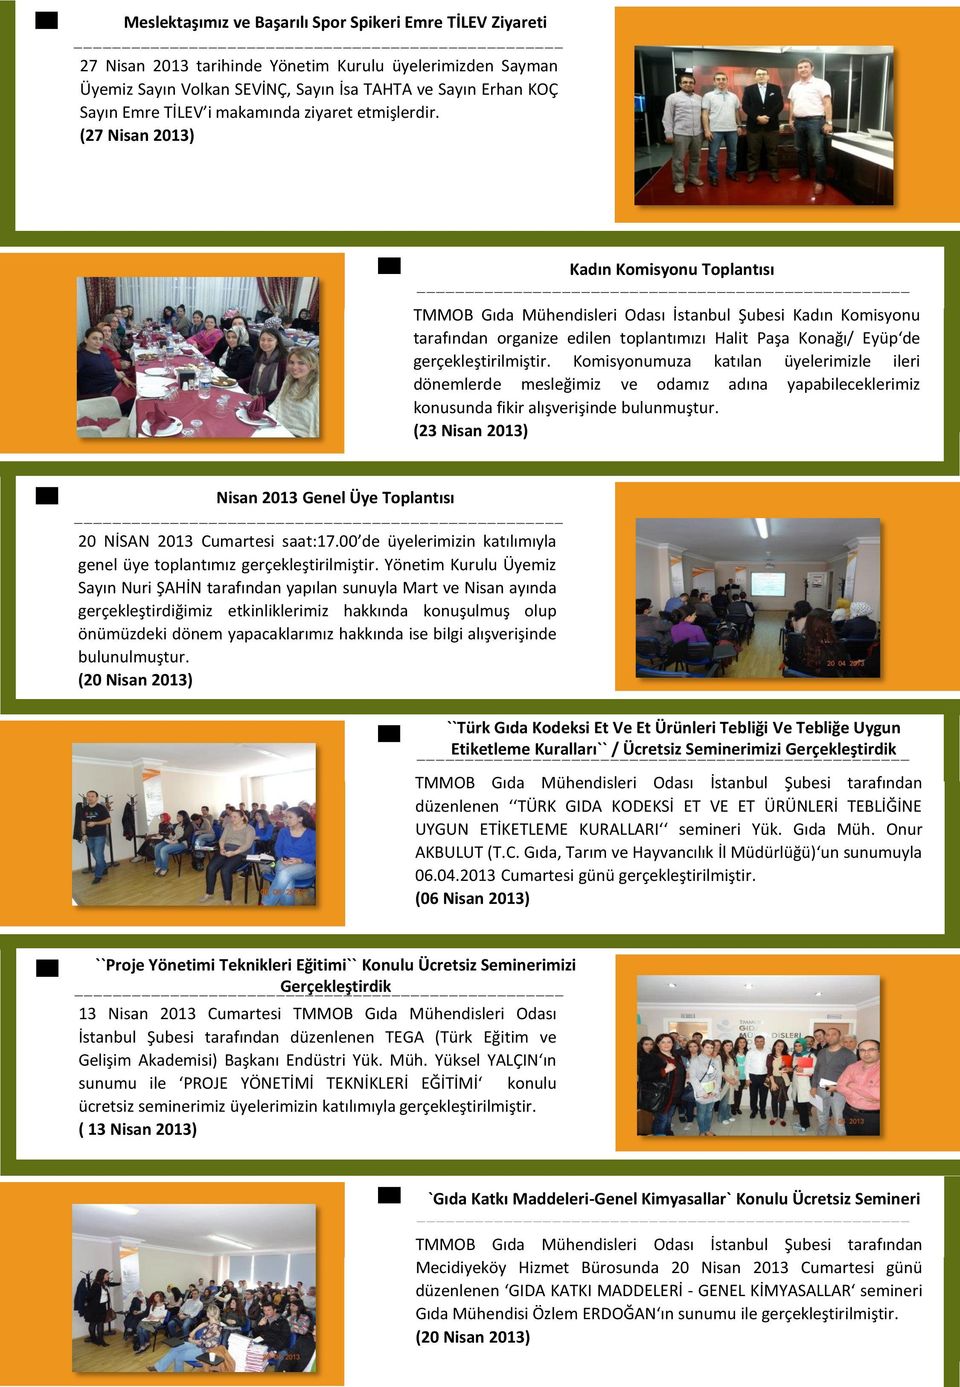 Kadın Komisyonu Toplantısı TMMOB Gıda Mühendisleri Odası İstanbul Şubesi Kadın Komisyonu tarafından organize edilen toplantımızı Halit Paşa Konağı/ Eyüp de gerçekleştirilmiştir.